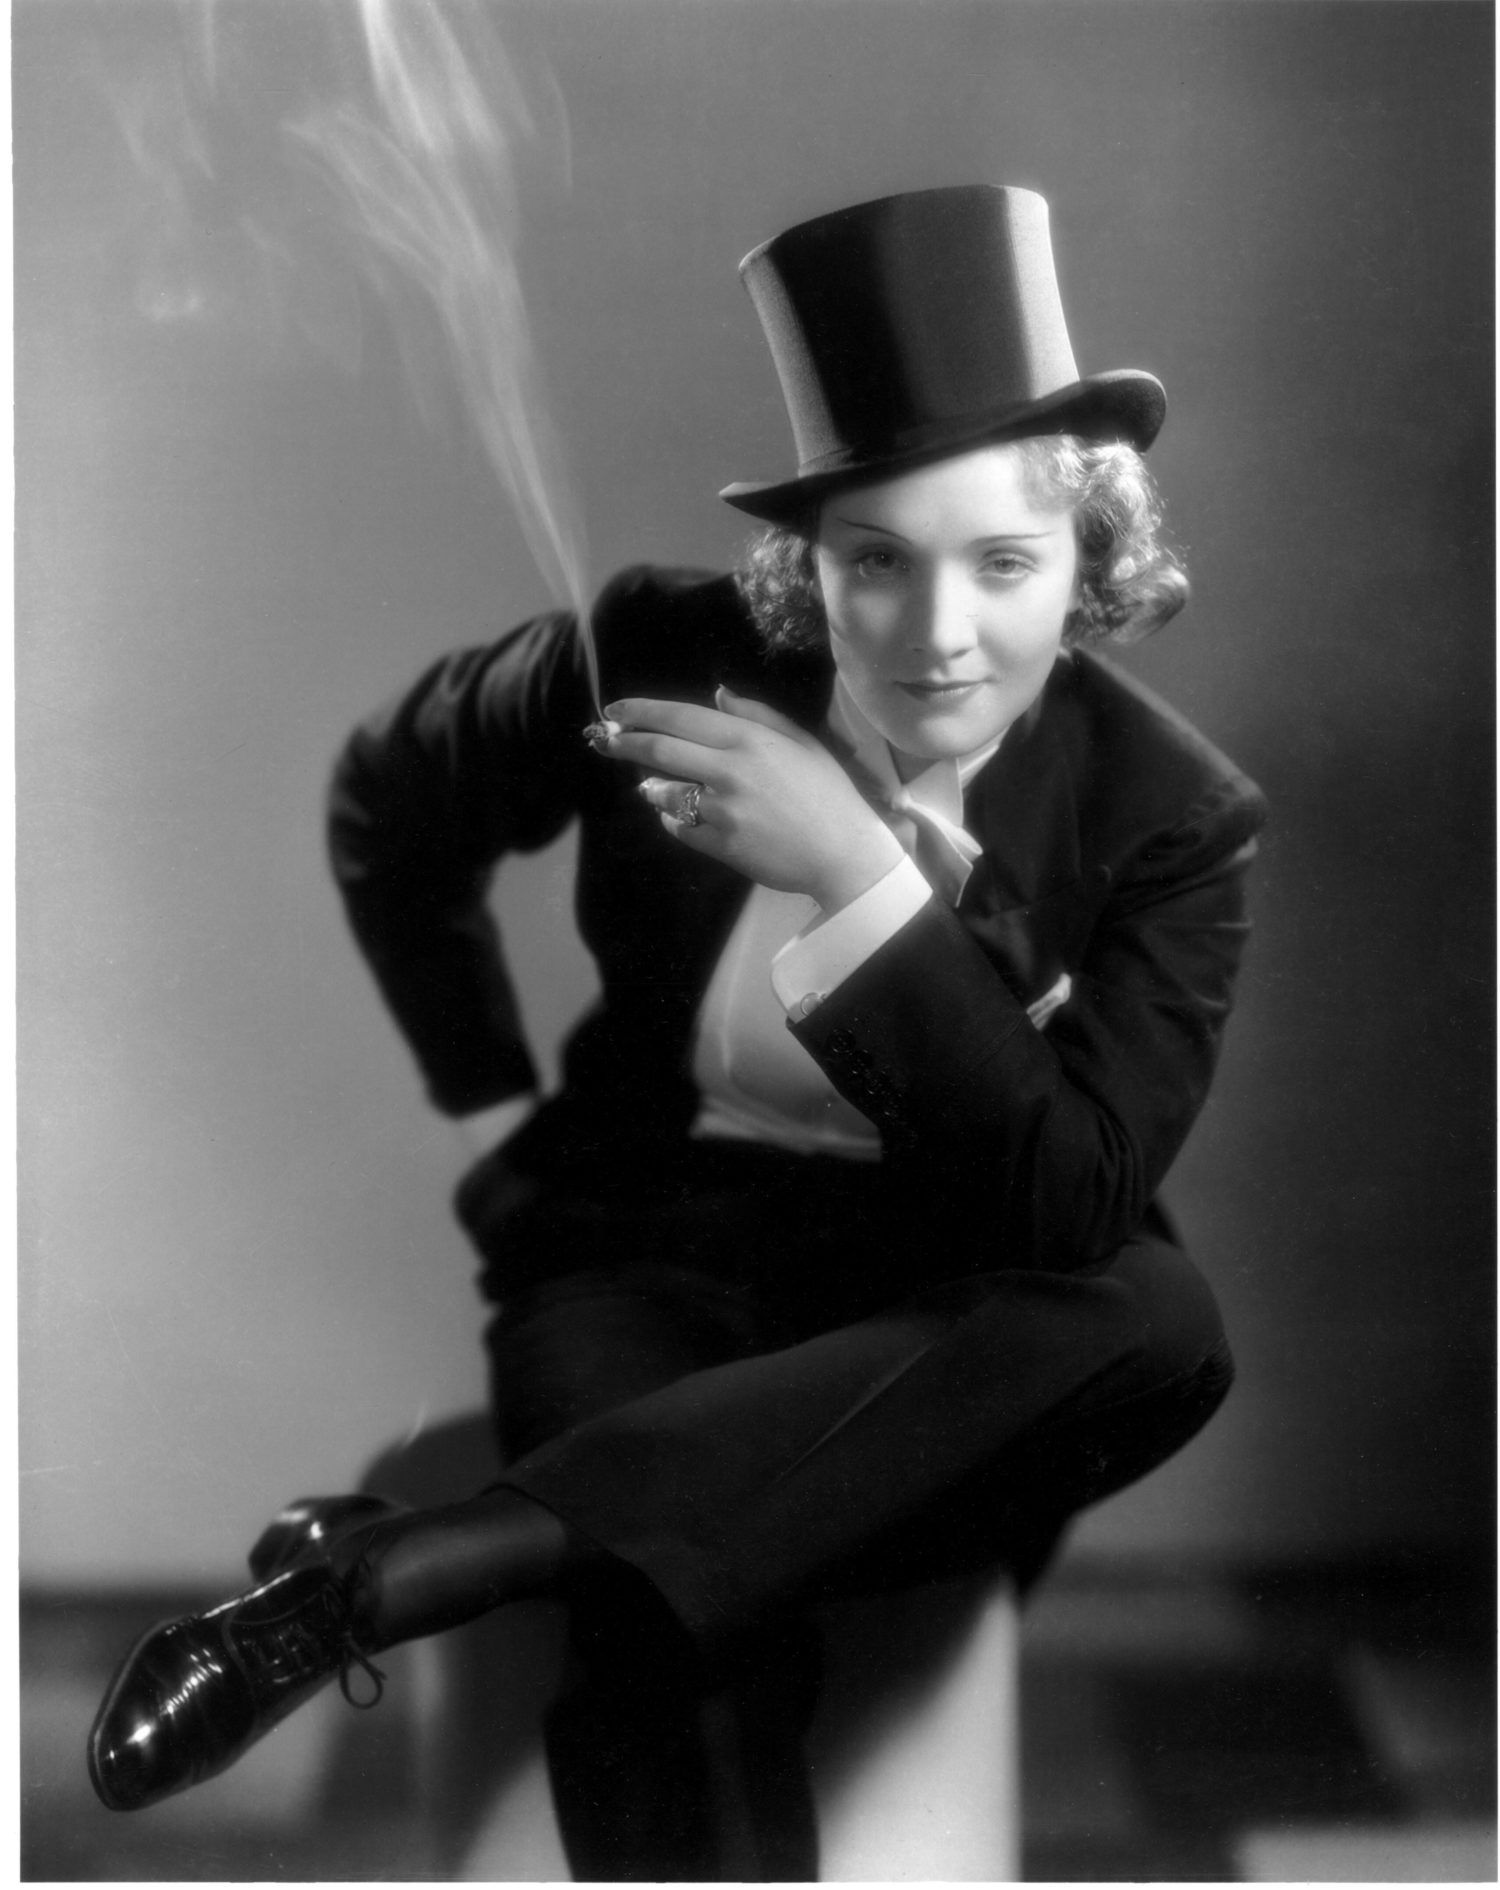 Berühmt ist Marlene Dietrich für ihre Auftritte im Hosenanzug. Ein Modetrend war geboren.  